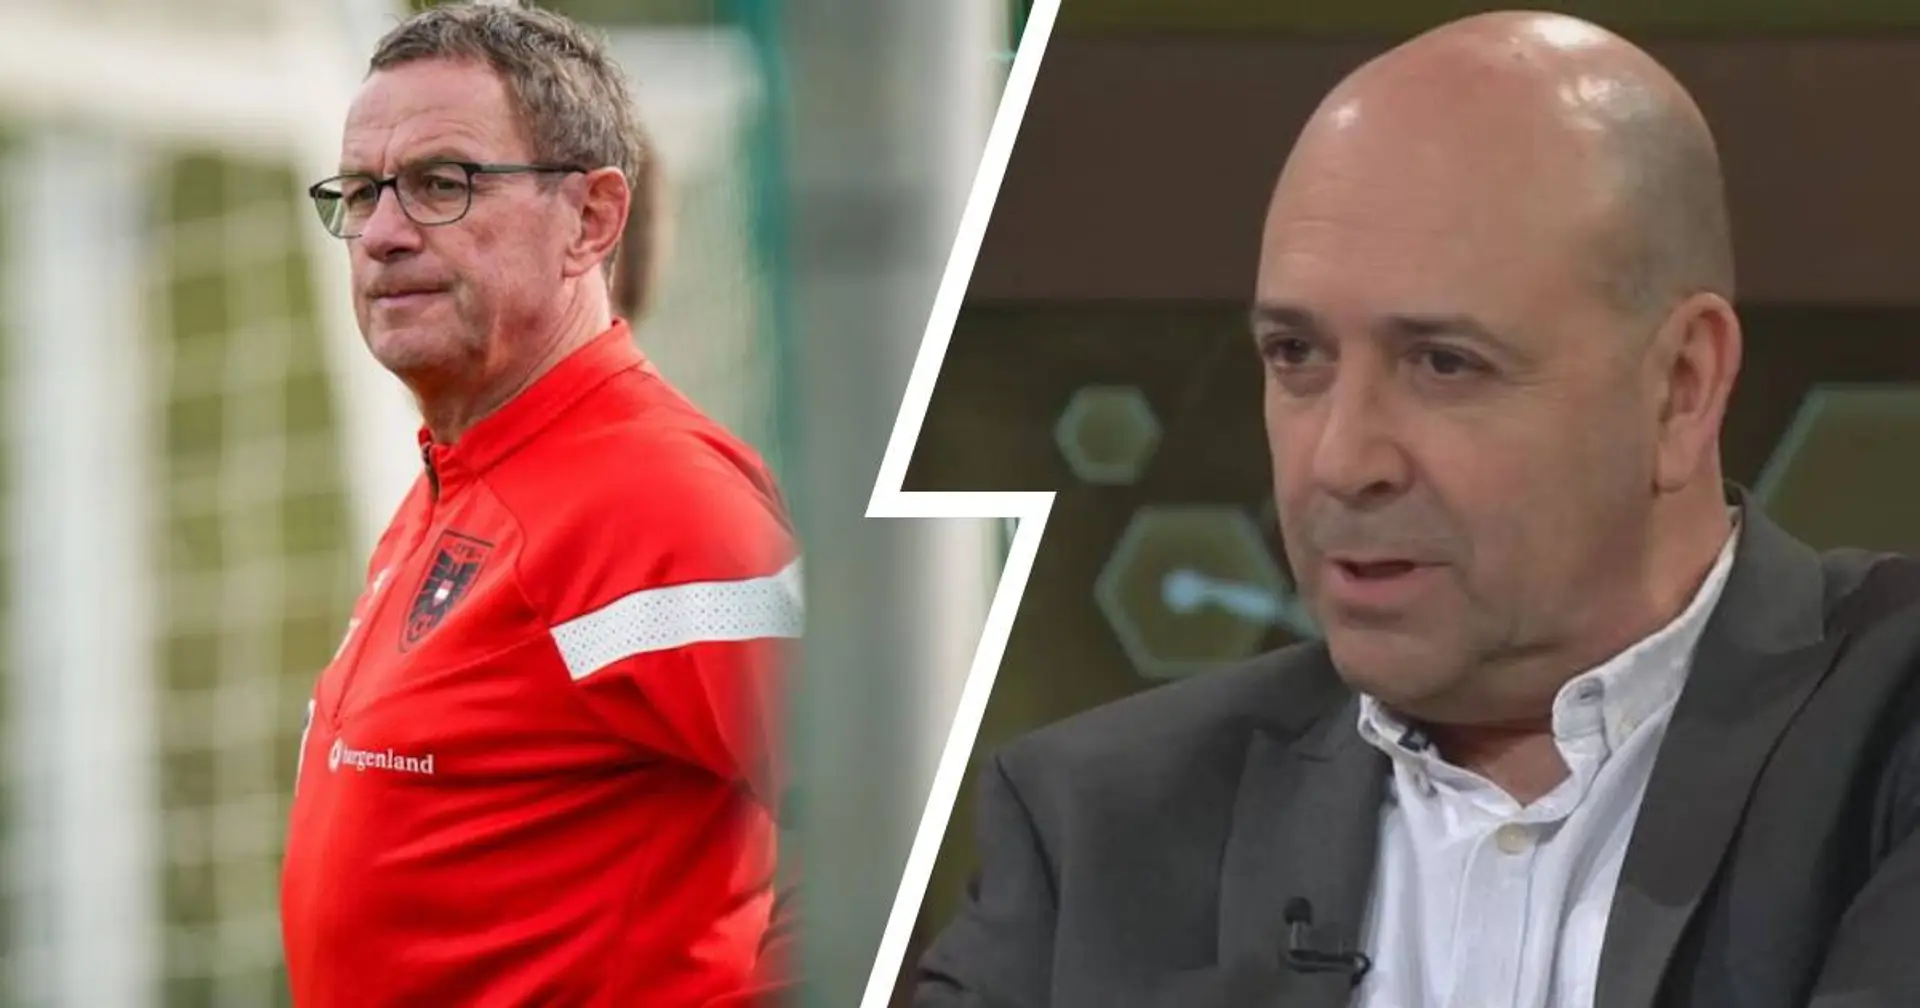 Carro sieht Rangnick wegen EM 2024 skeptisch: Bayern braucht einen Trainer, der Zeit für Kaderplanung hat